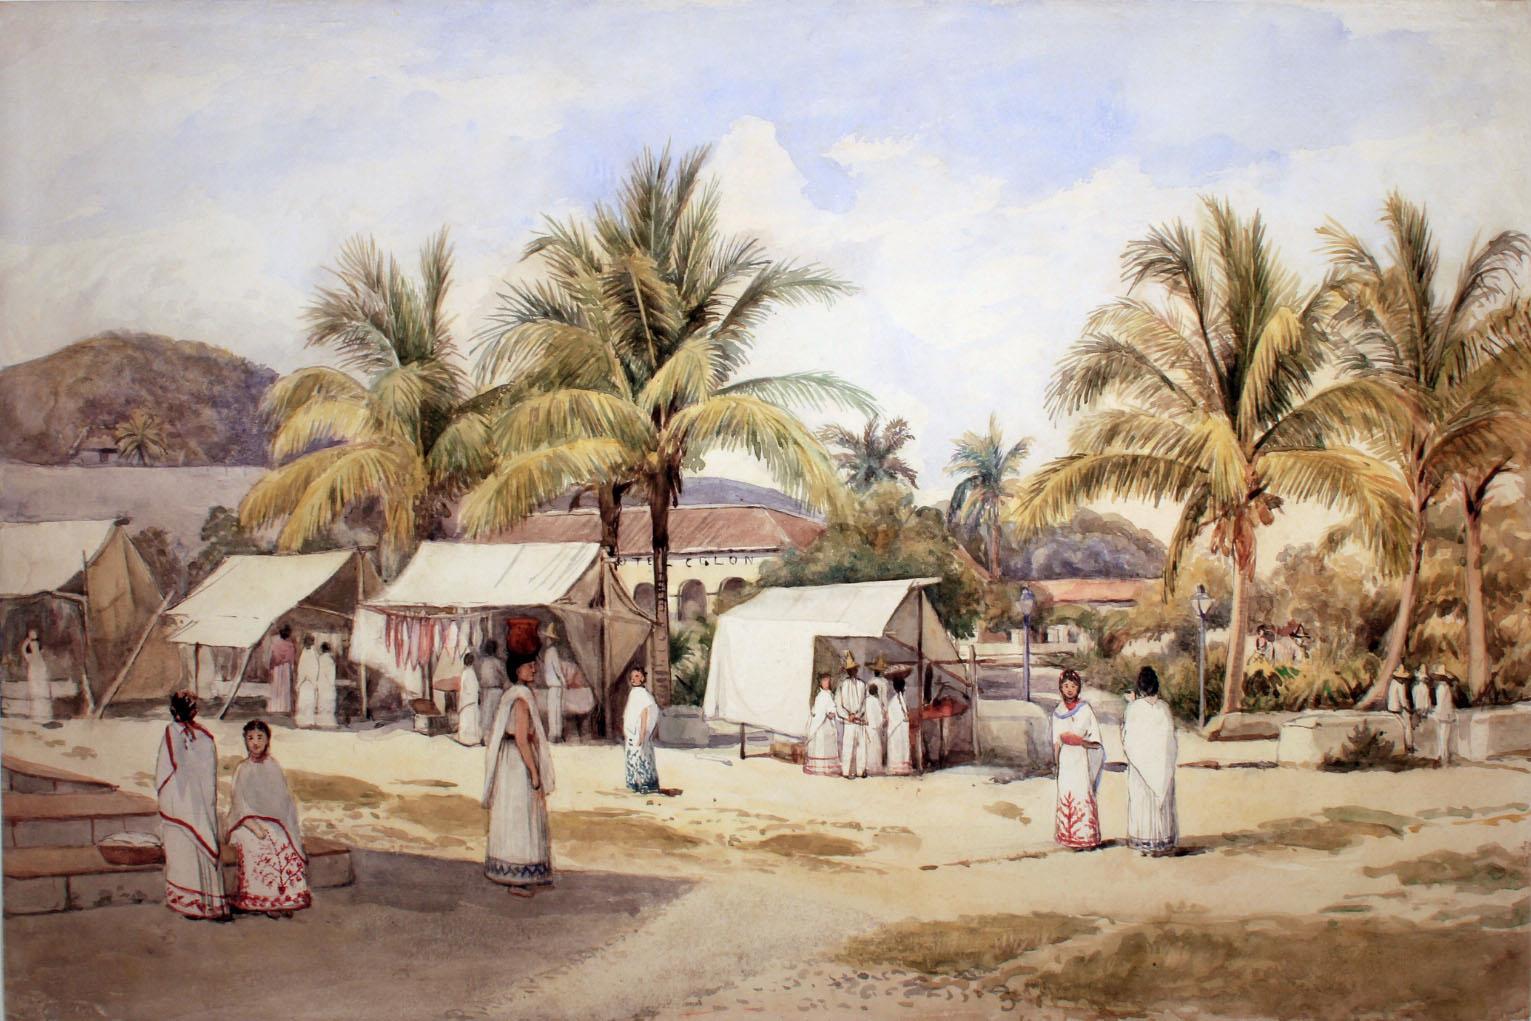 Adela Catherine Breton - The Market Place at Papantla - c1894